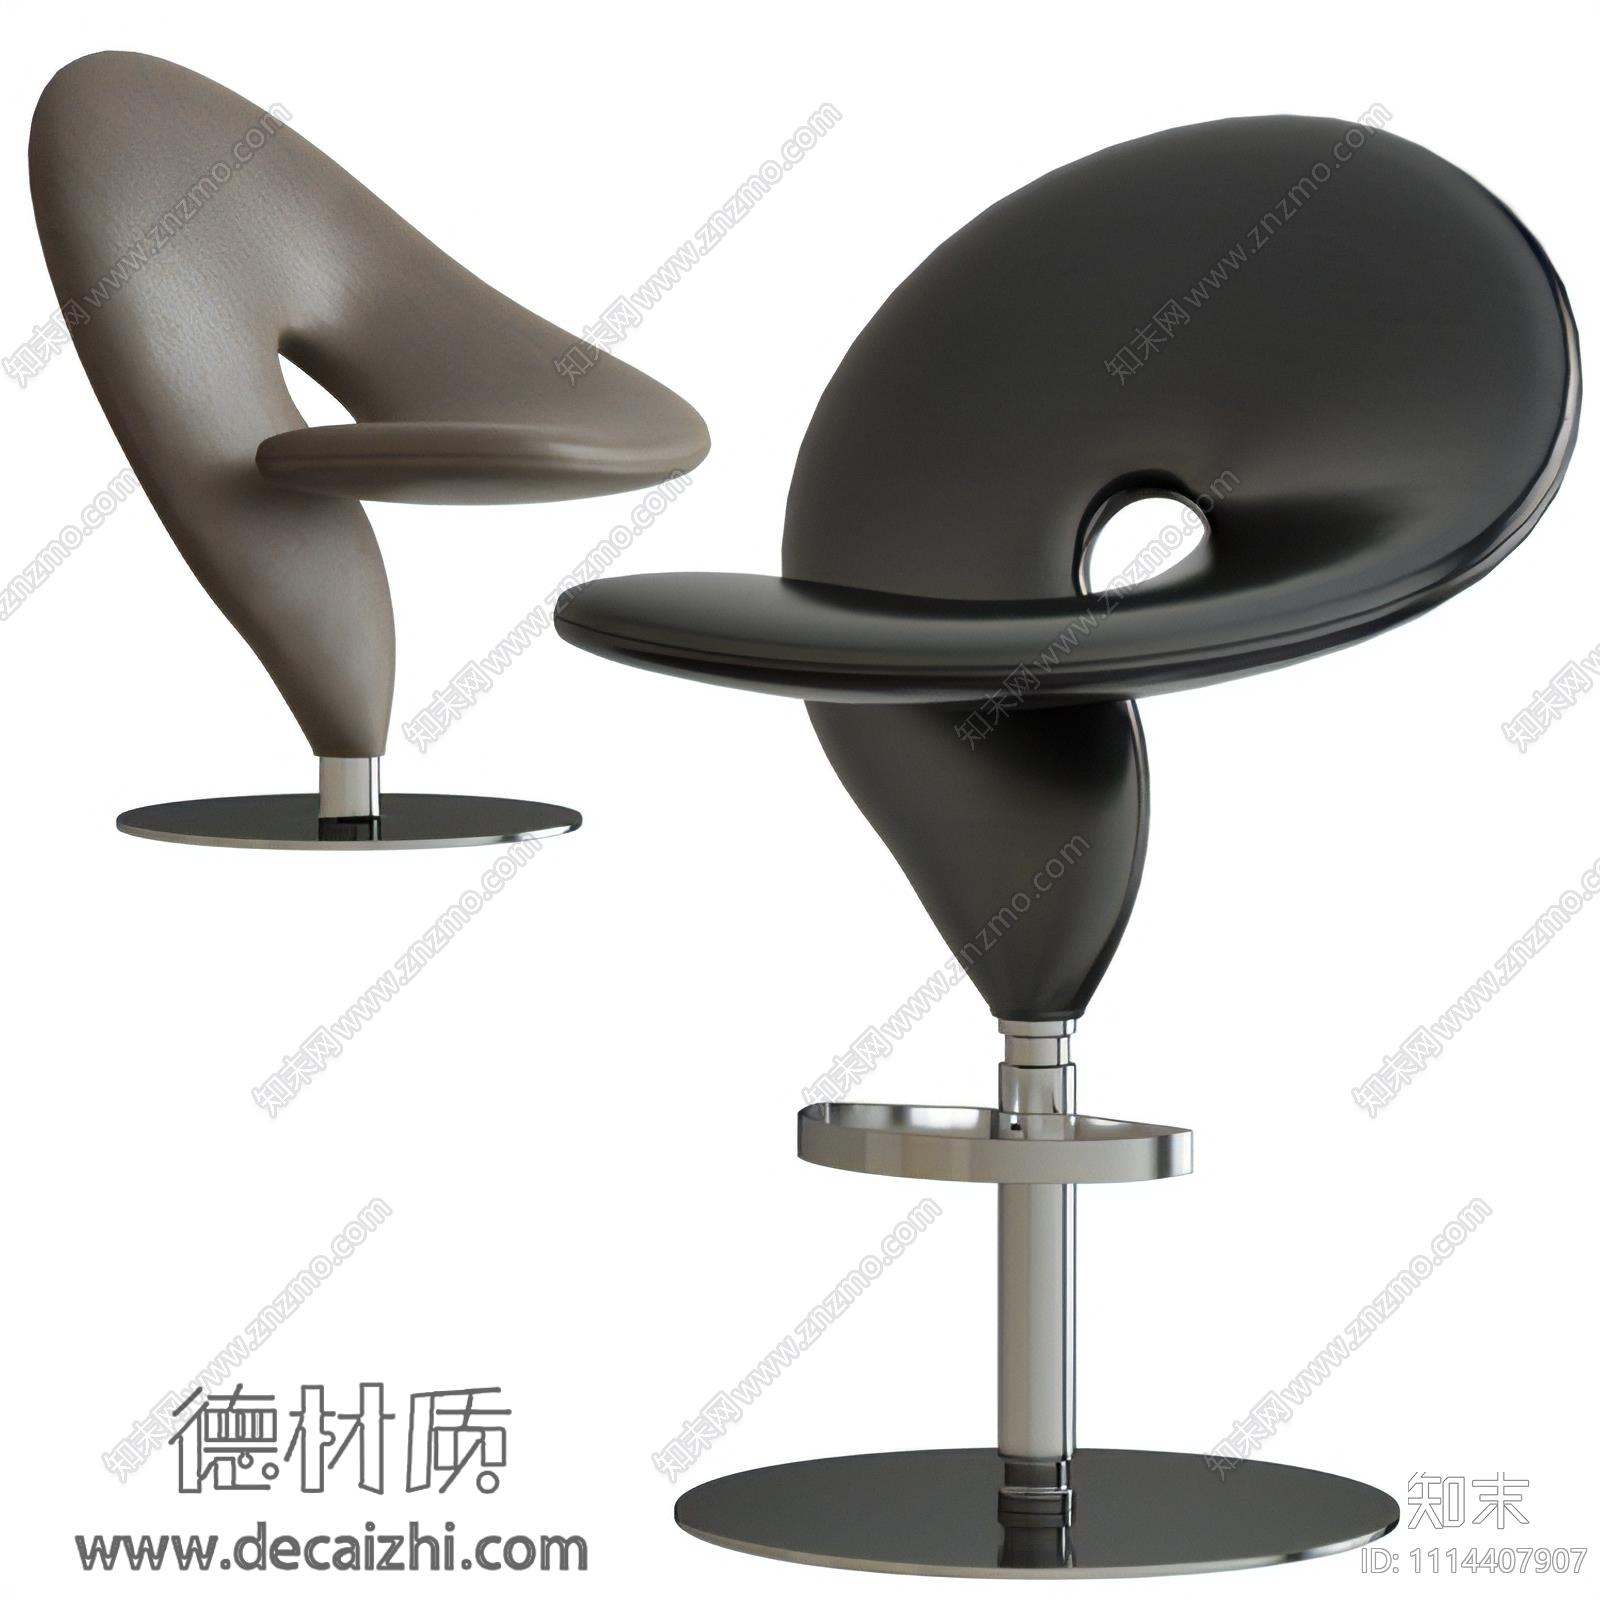 1114407907    现代个性皮革吧椅3d模型 ID-11926111.jpg